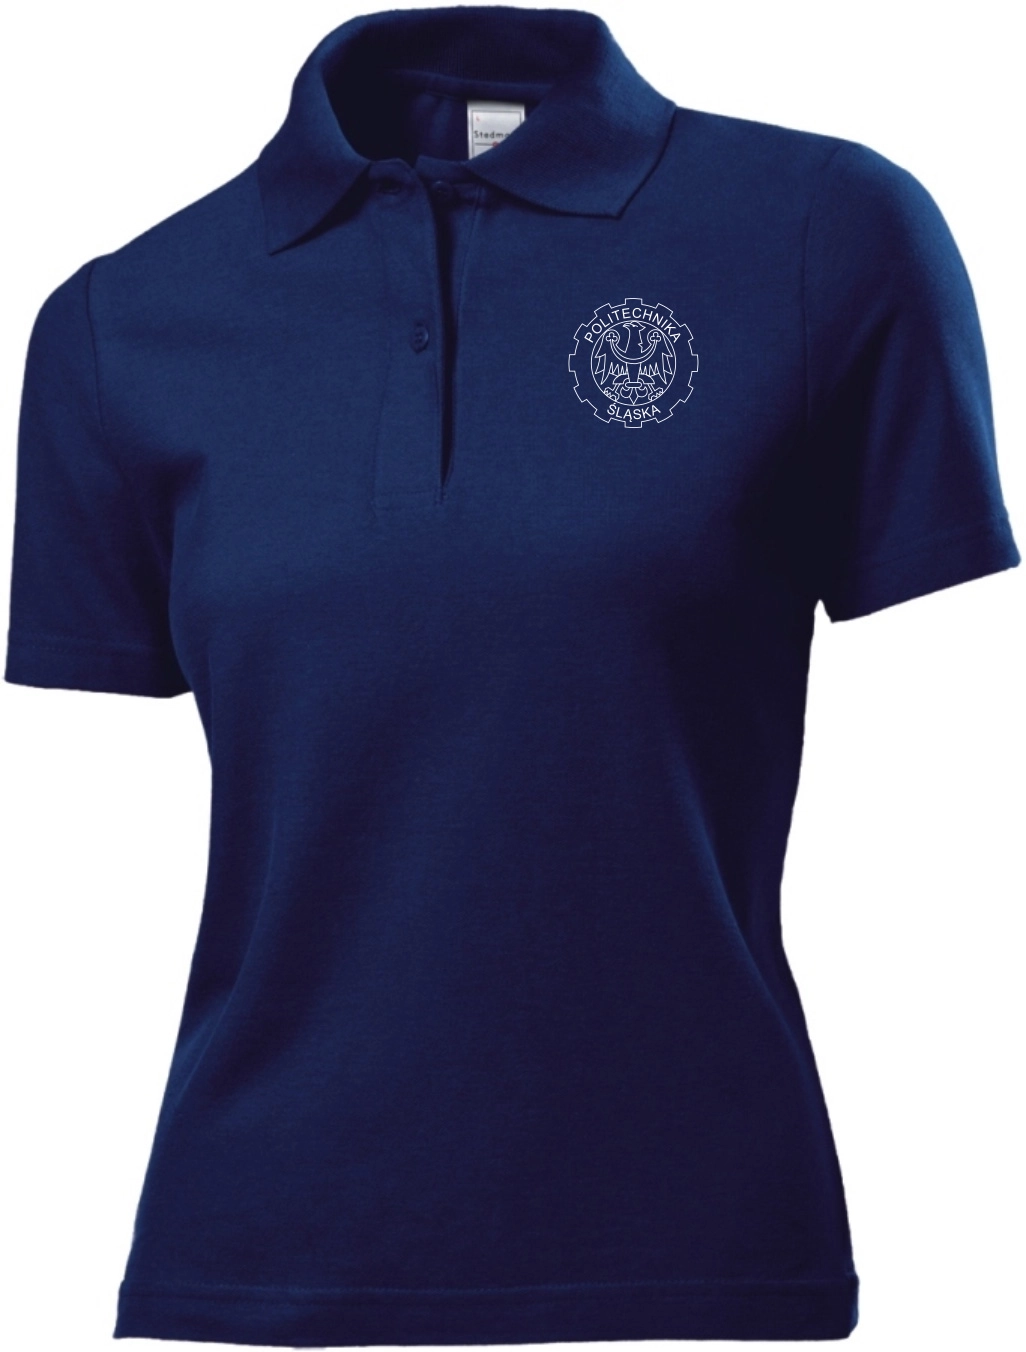 Koszulka Polo (damska) – sygnowana logiem Politechniki Śląskiej GR-62465